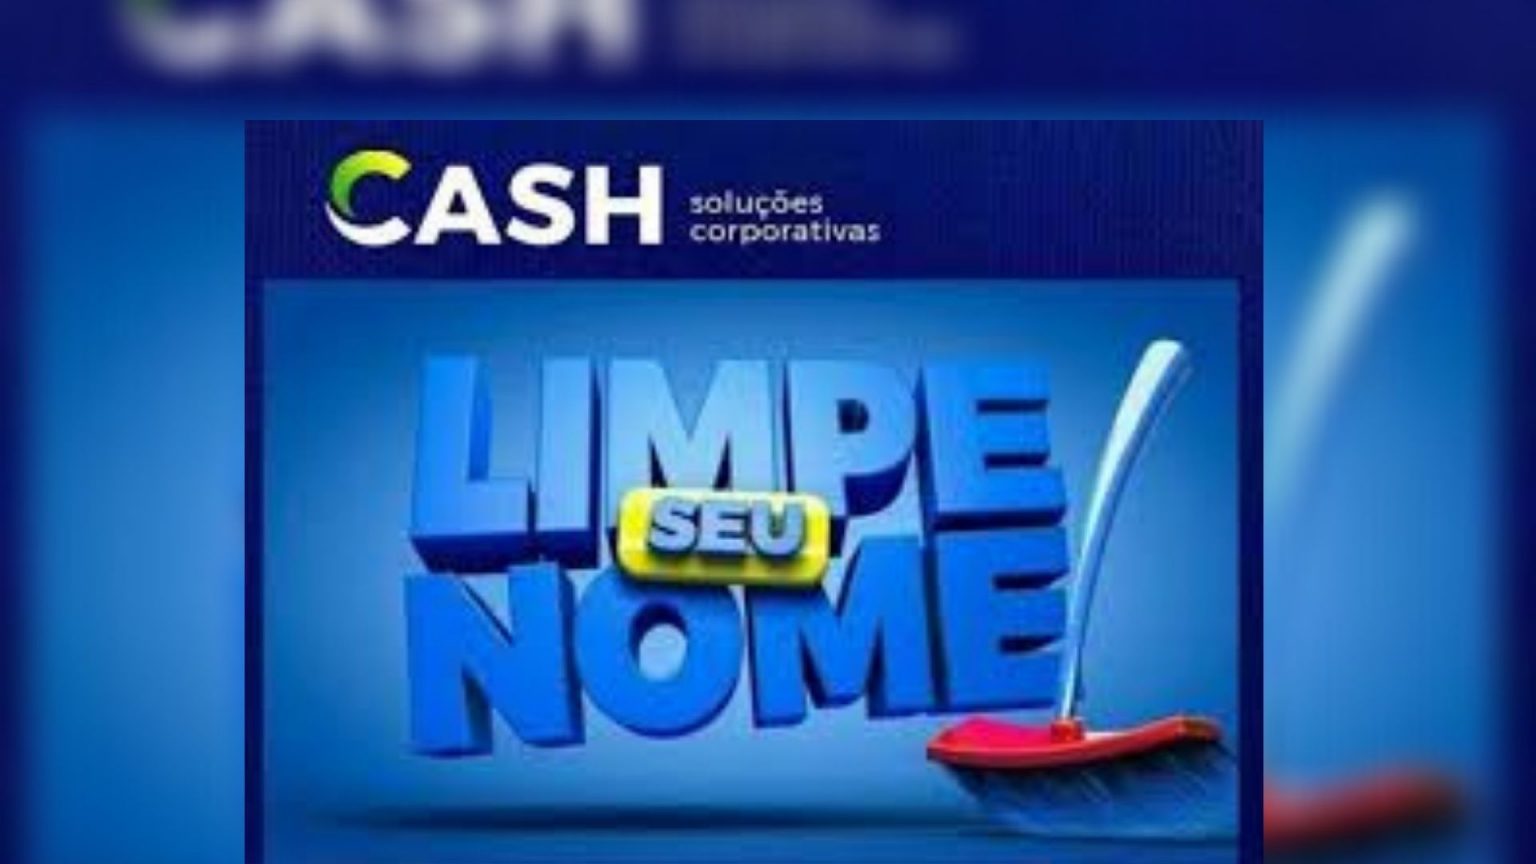 Grupo Cash é referência no Brasil e tem métodos para aumento do Score